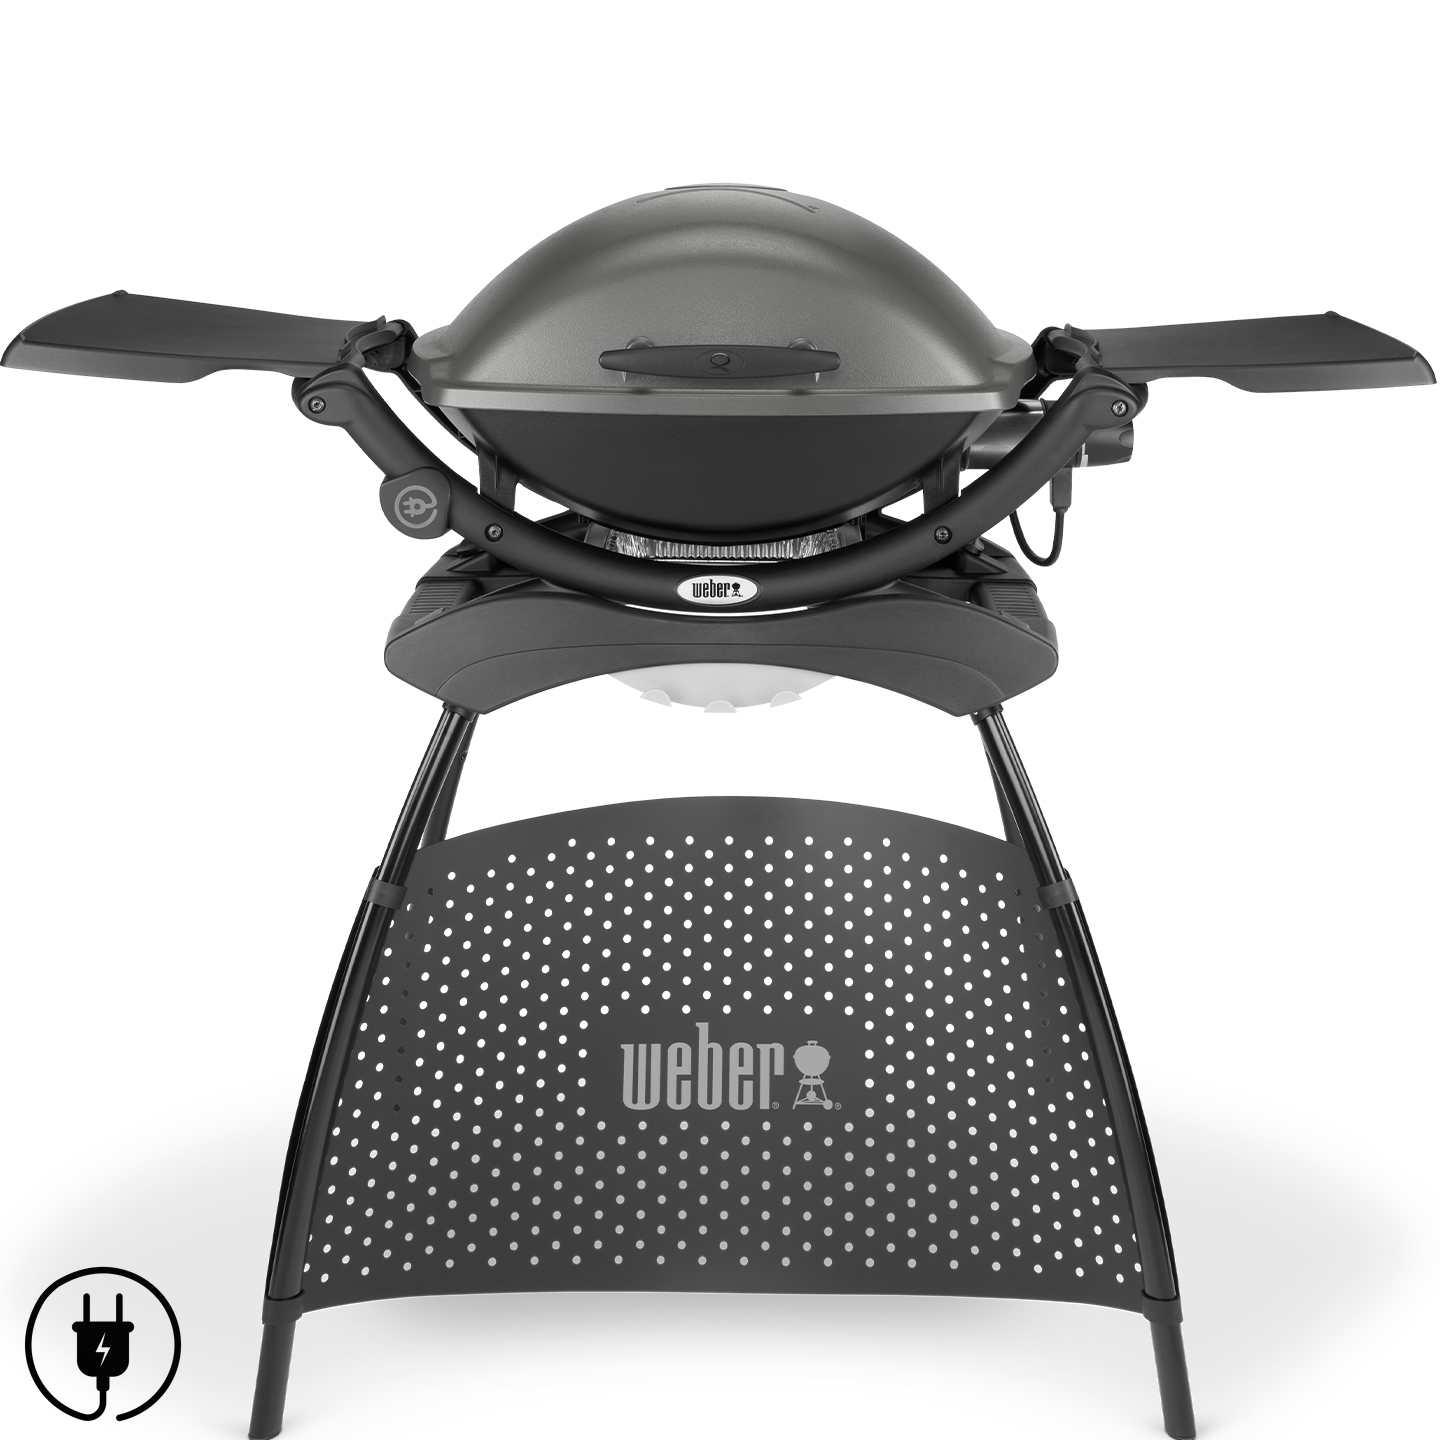 Weber Q 2400 55020853 Barbecue elettrico con stand - grigio scuro